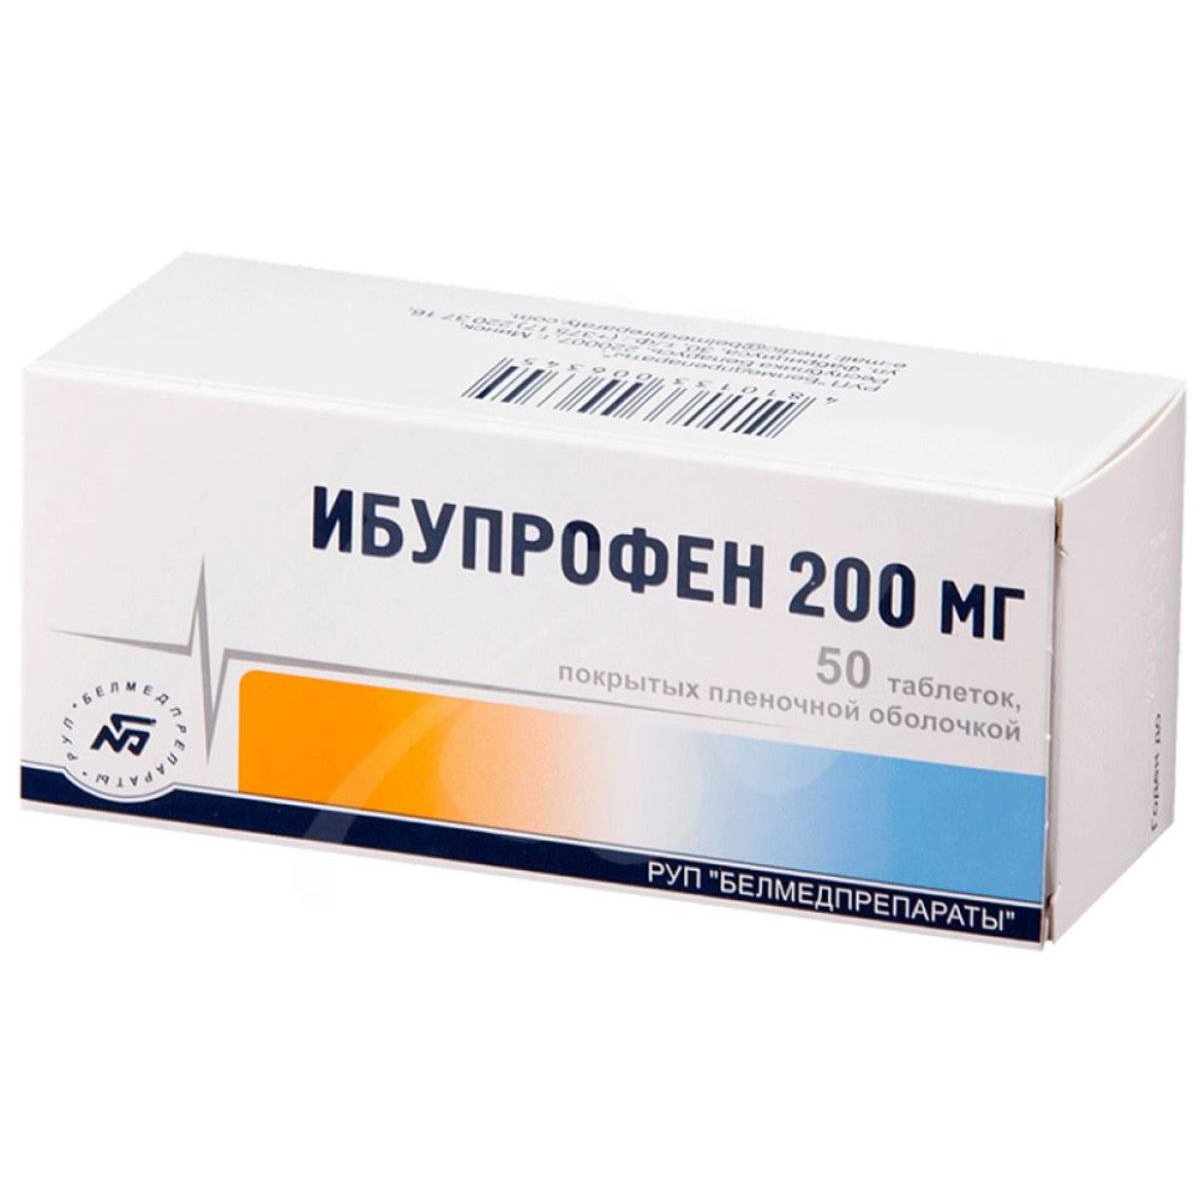 Ибупрофен таблетки 200 мг 50 шт. от 34.4 ₽ в аптеках Москвы | Мегаптека